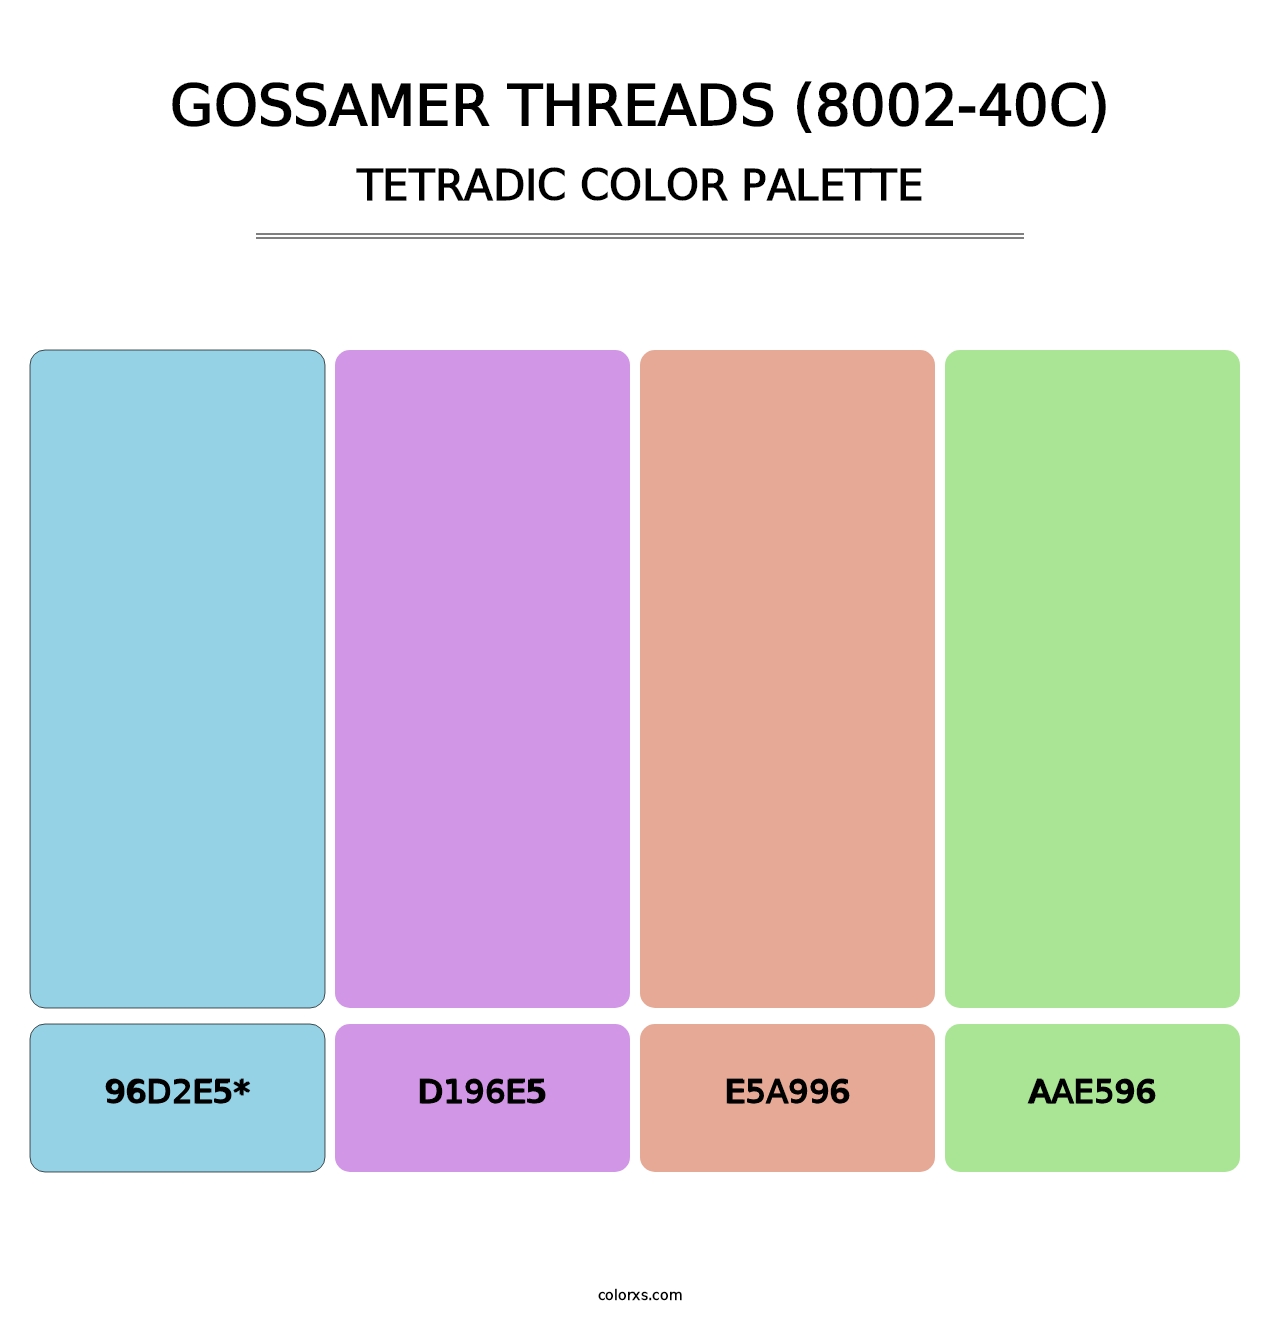 Gossamer Threads (8002-40C) - Tetradic Color Palette